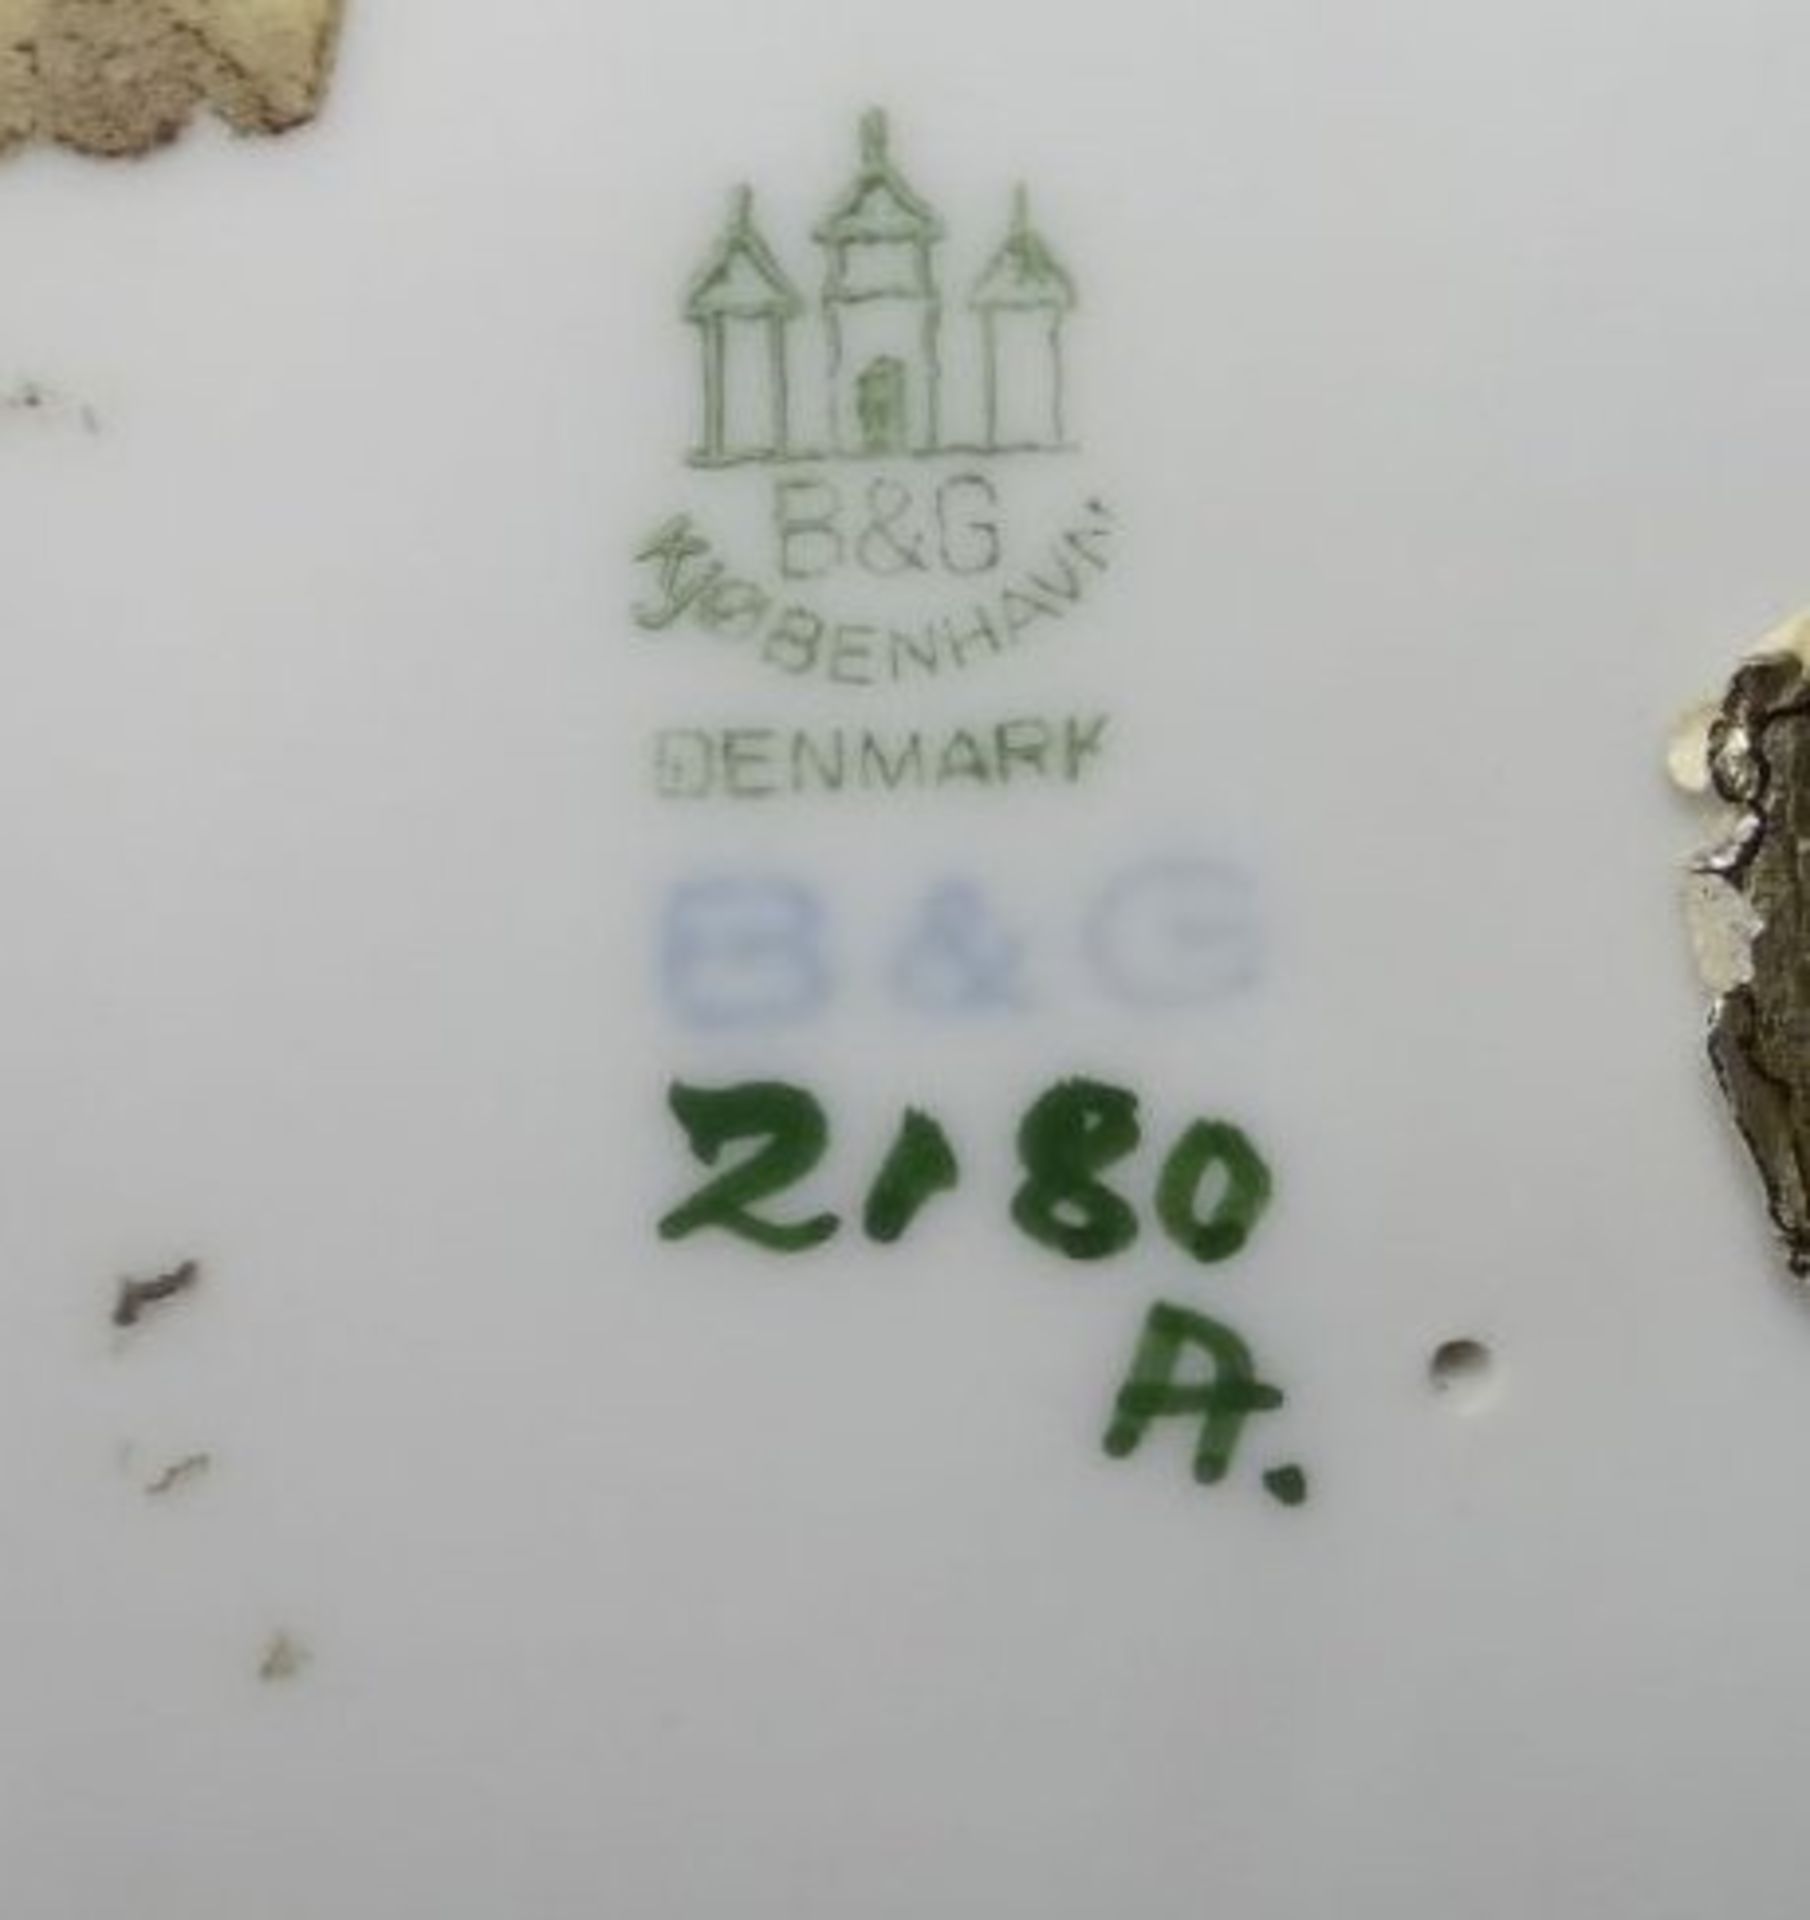 Mädchen mit Ziege "Bing&Gröndahl",beide Hornspitzen beschädigt, H-20- - -22.61 % buyer's premium - Bild 6 aus 6